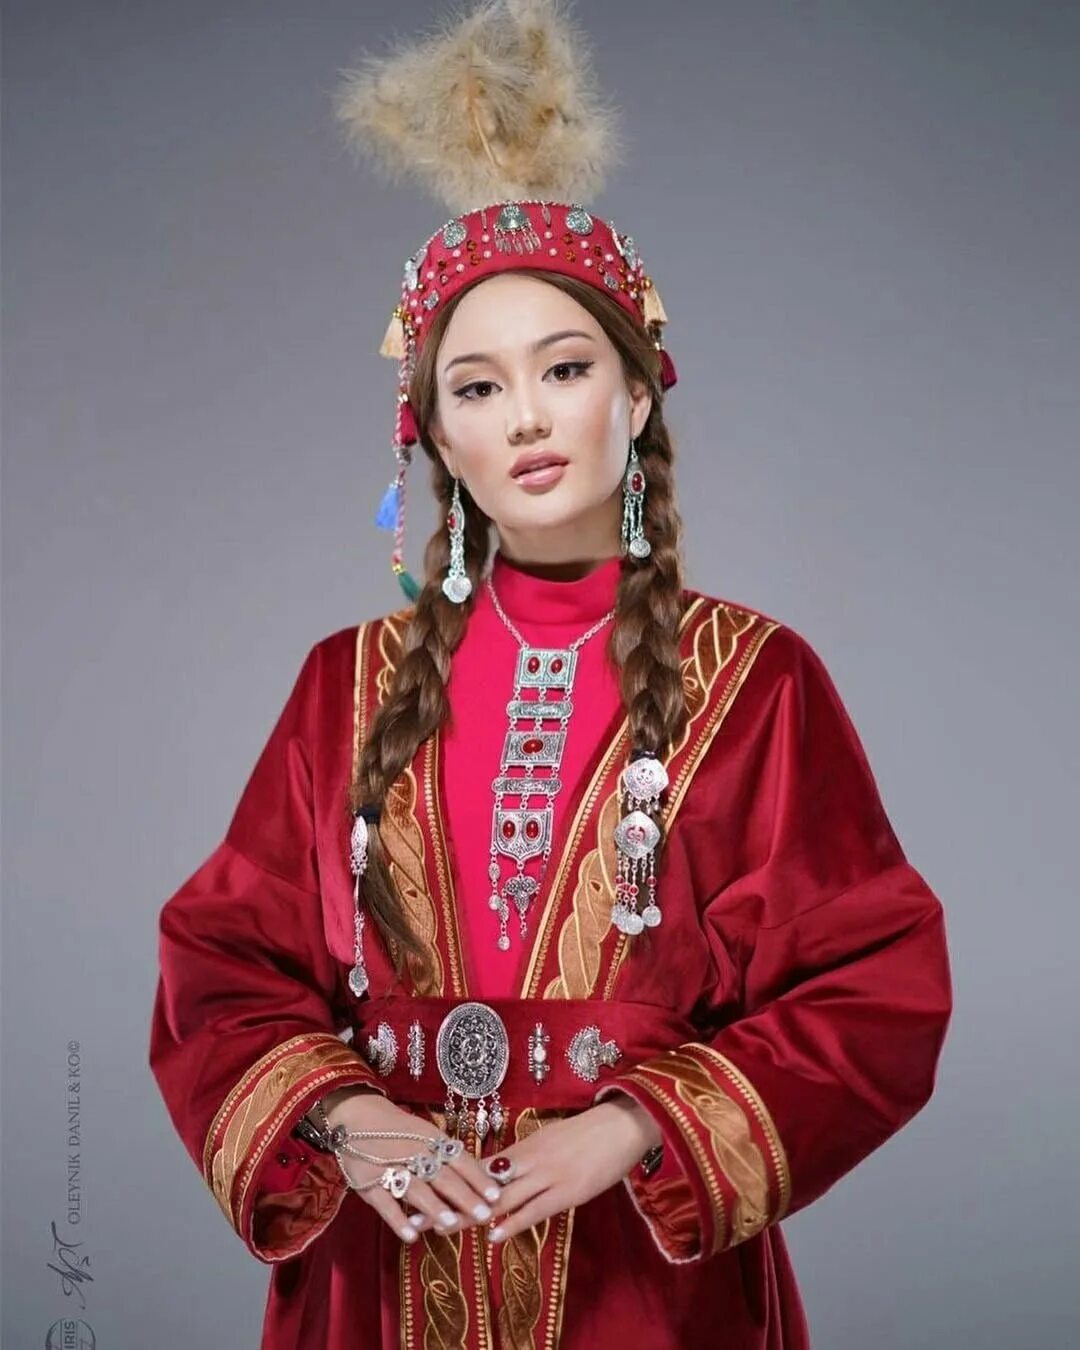 Казашки 3. Национальная одежда казахов. Народная одежда Казахстана. Казахский нац костюм. Традиционный казахский костюм.